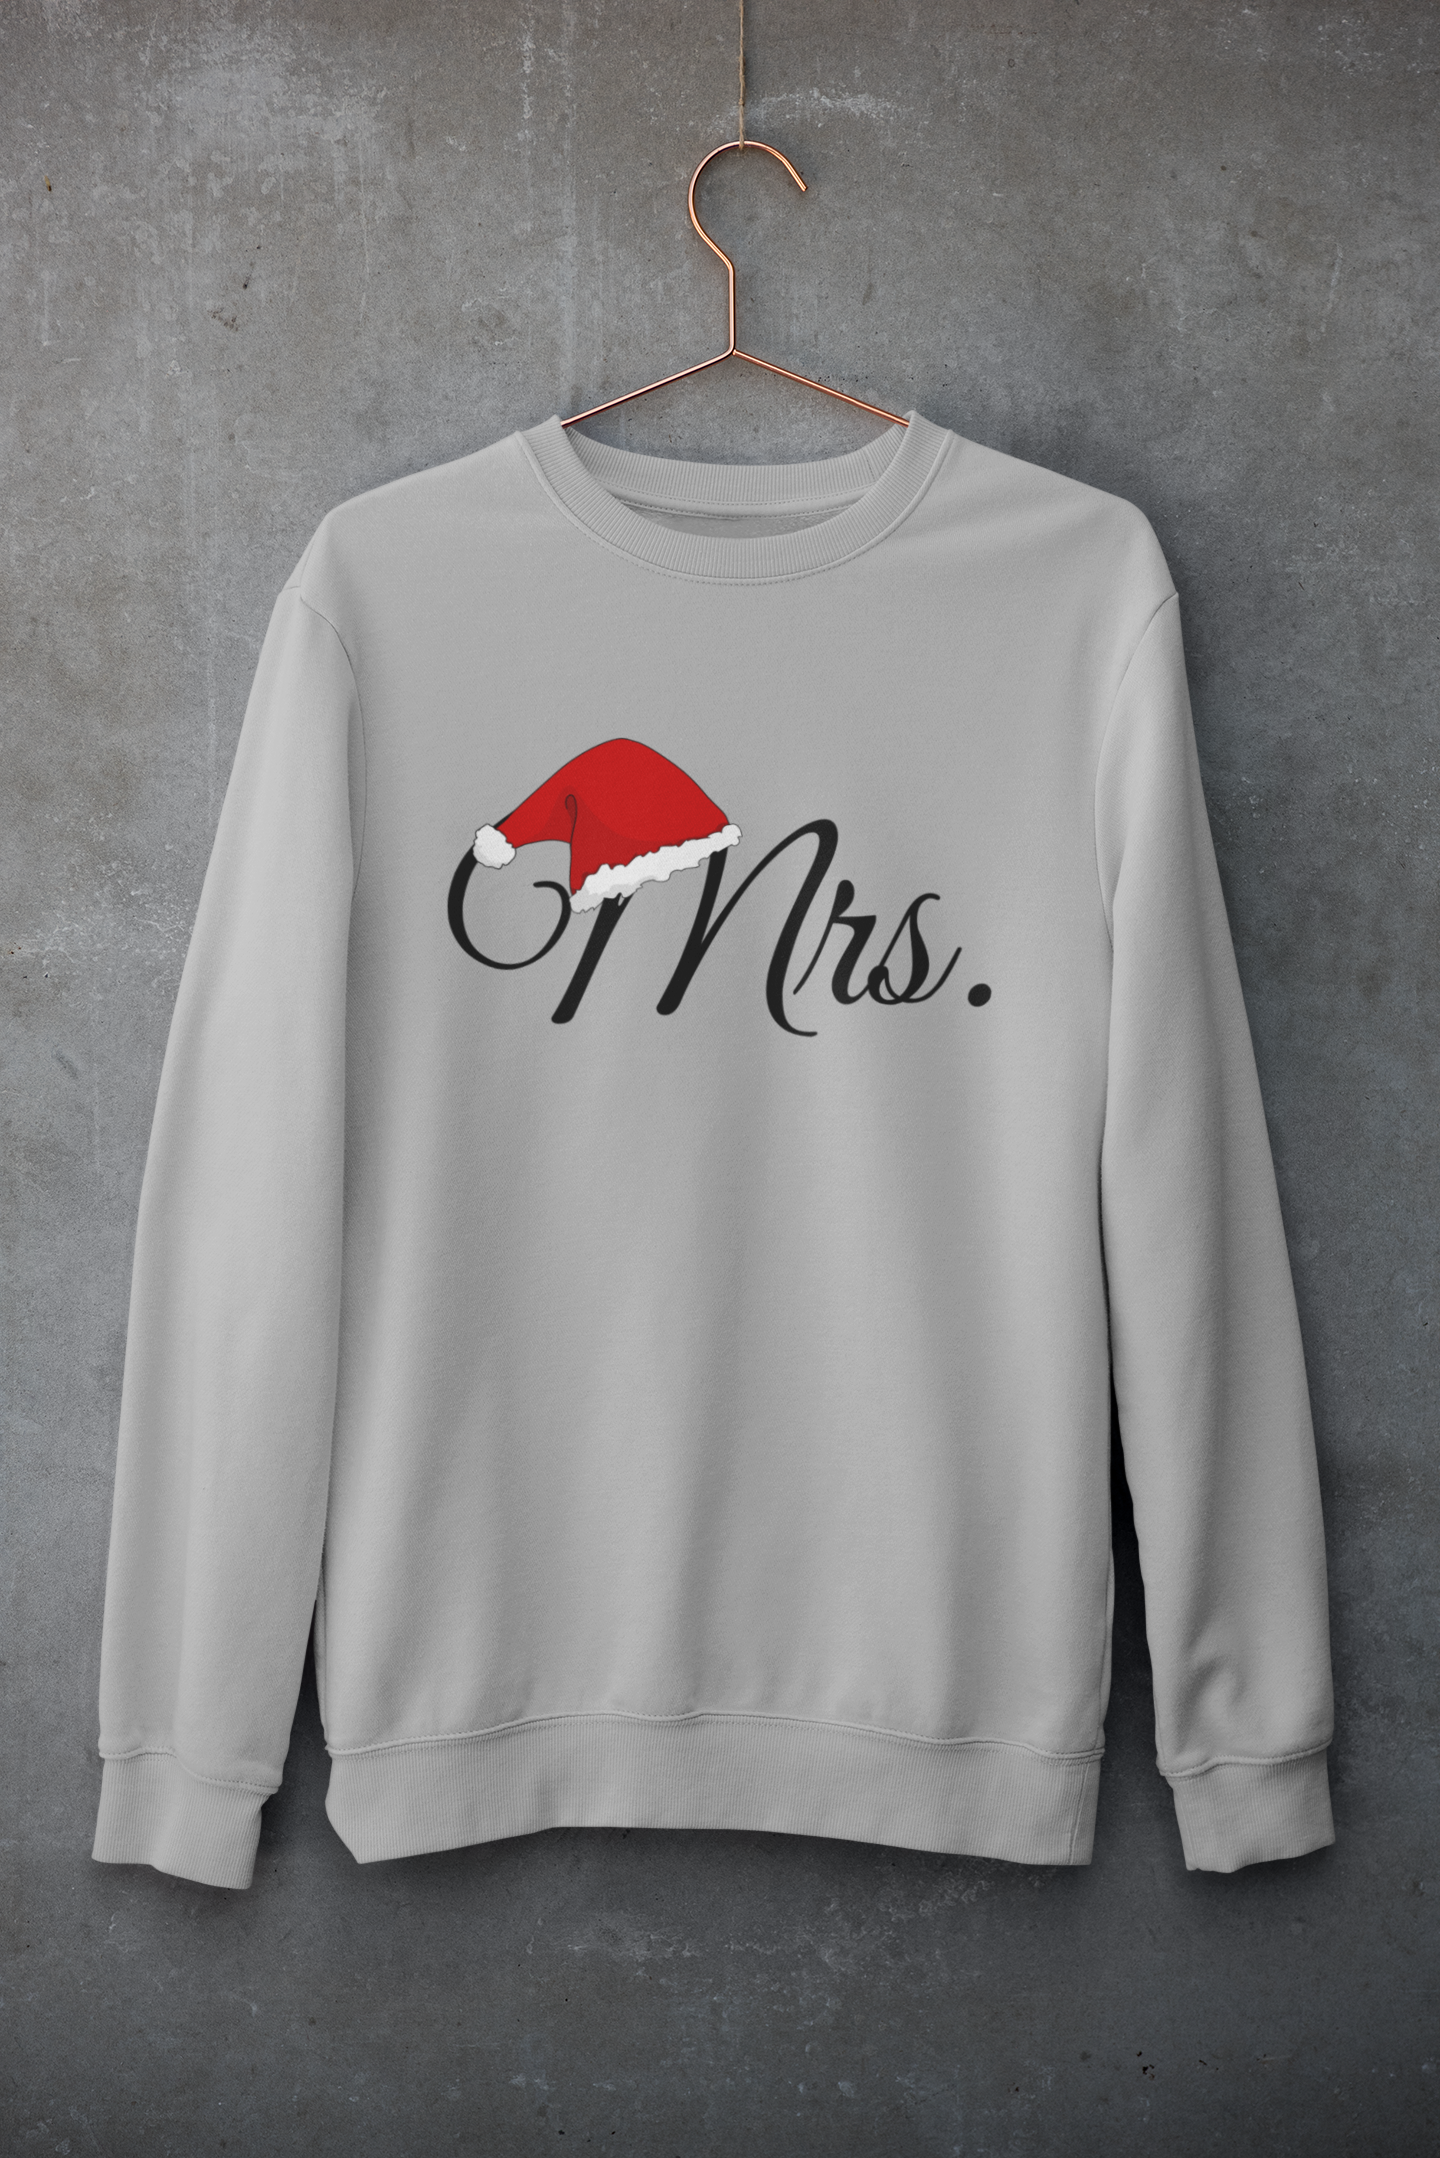 Mrs. Christmas Sweatshirt